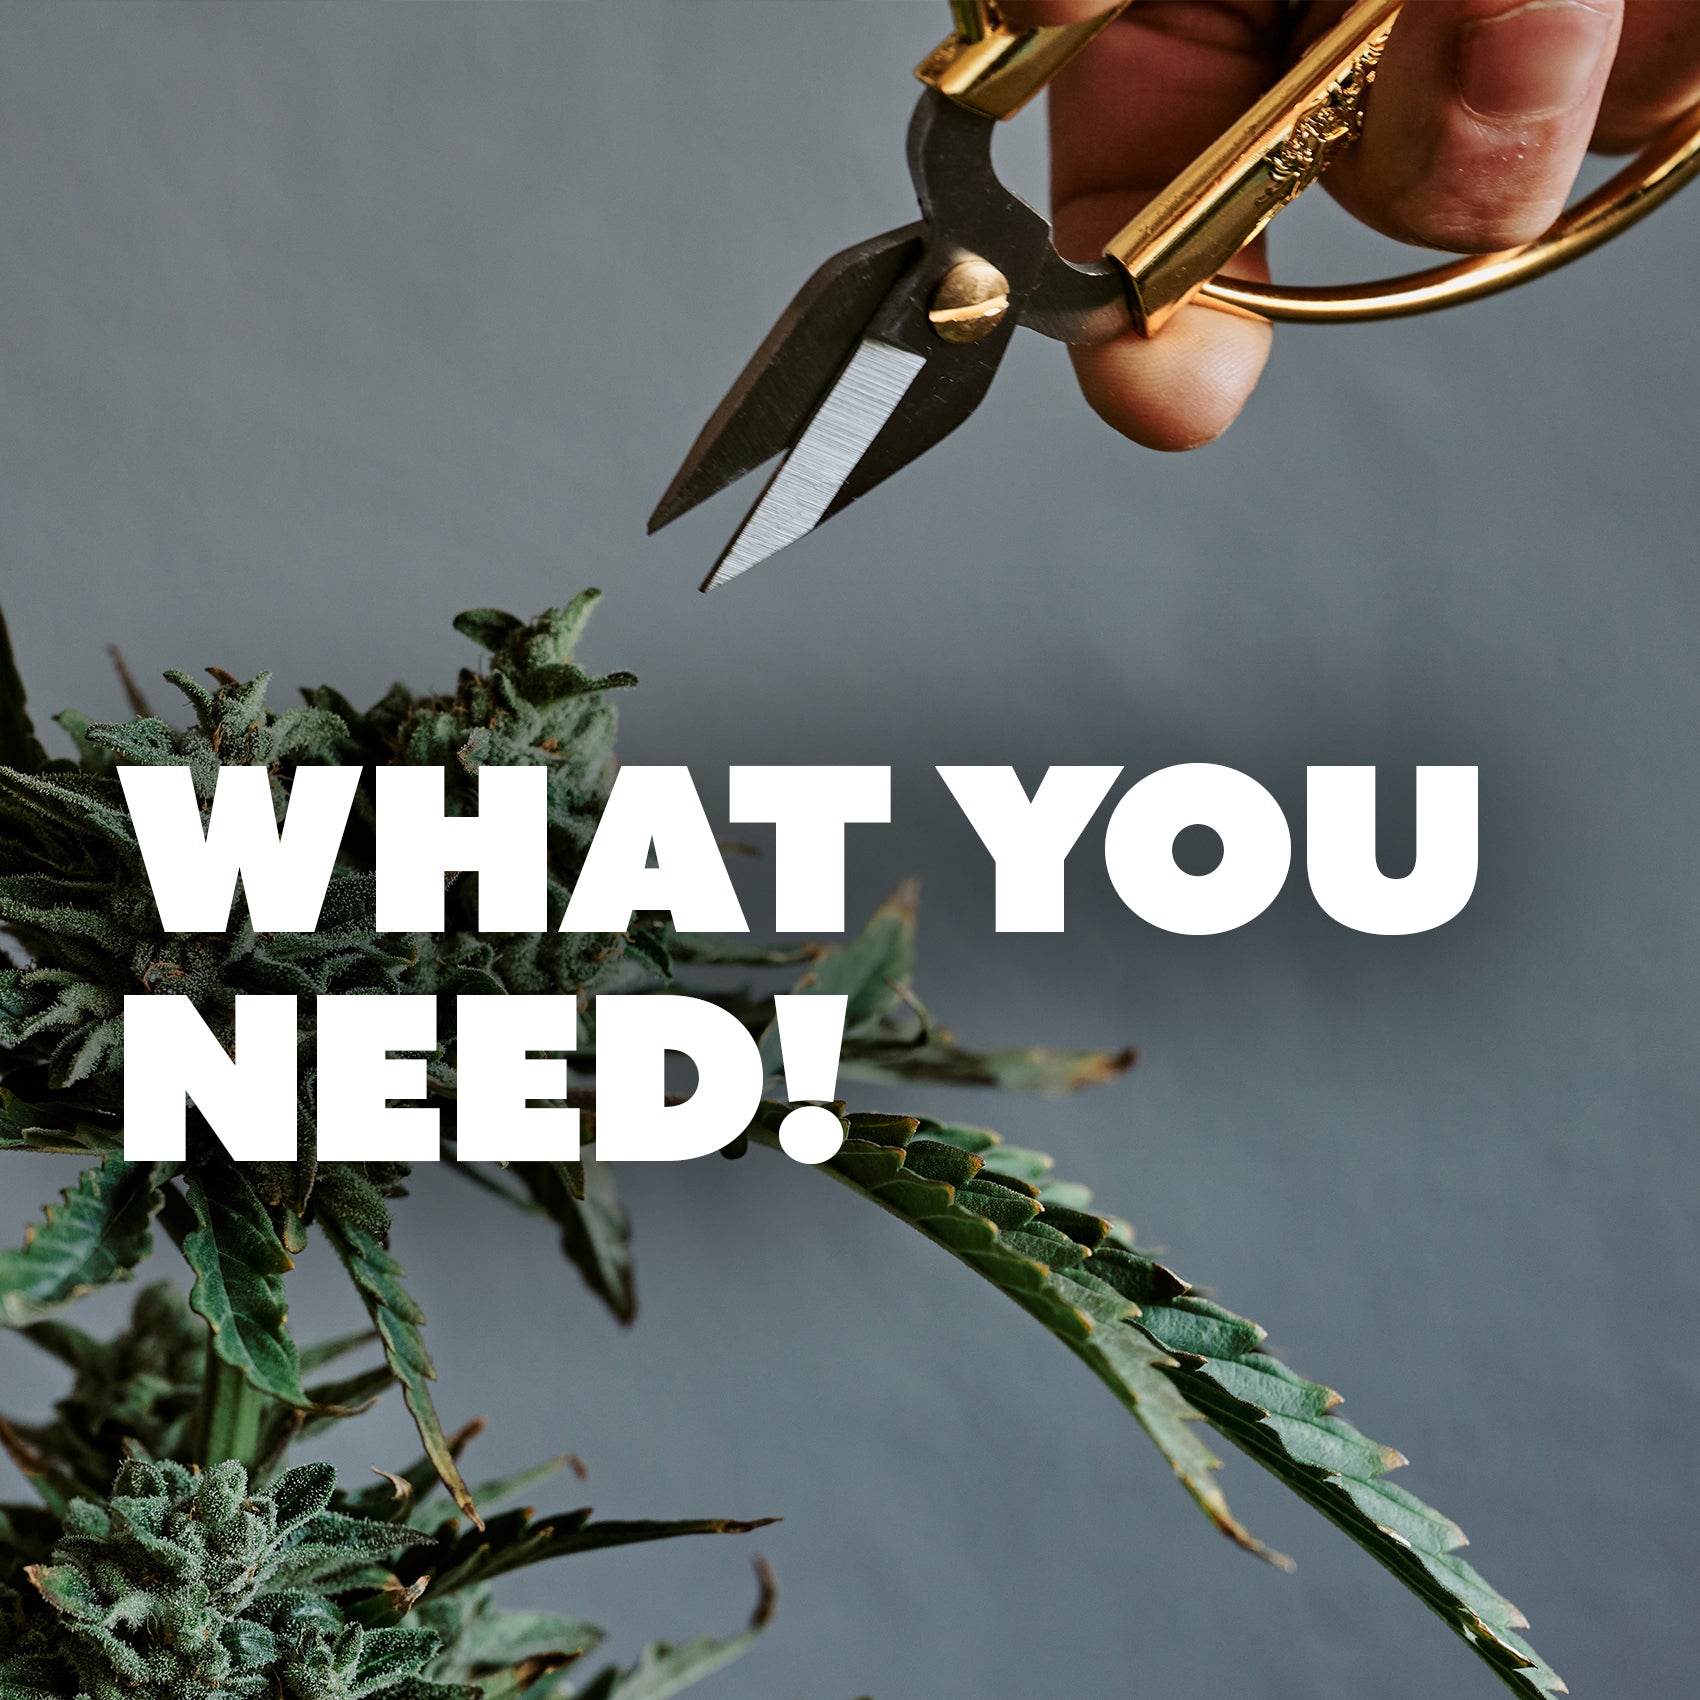 Benötigte Materialien und Werkzeuge für den erfolgreichen Cannabisanbau